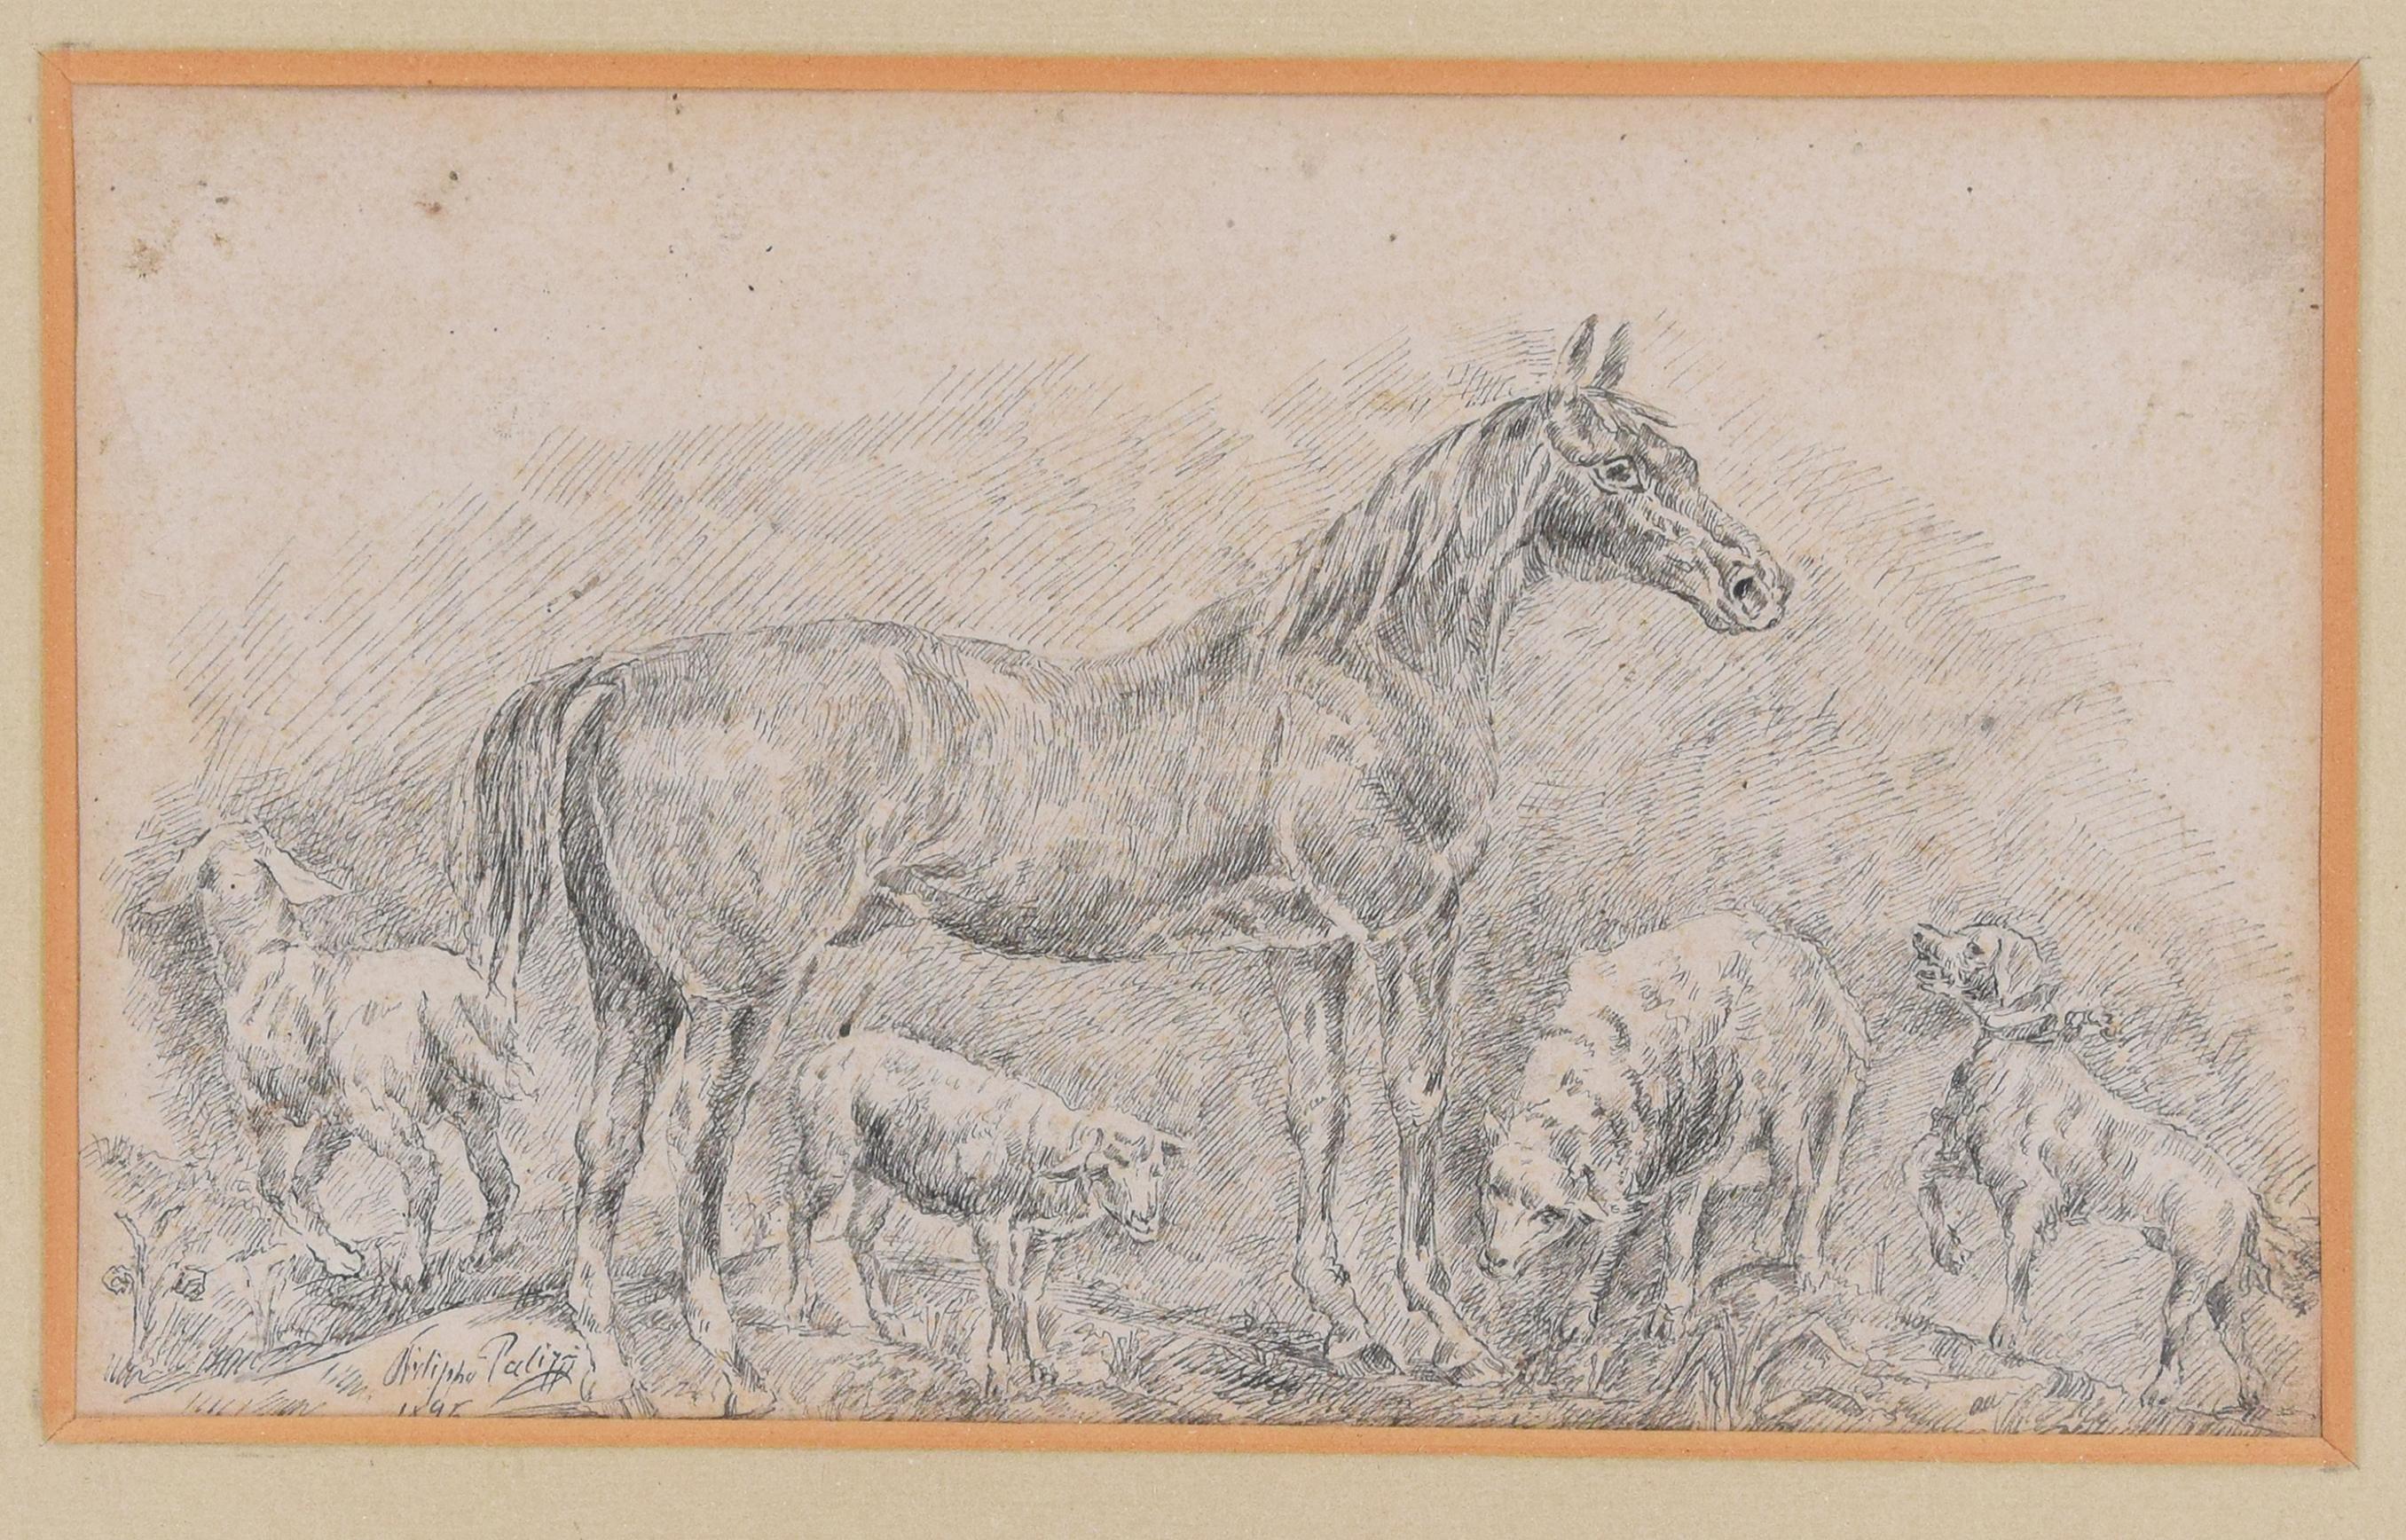 Peinture à l'encre chinoise « Horse with Herds » de Filippo Palizzi, 1895